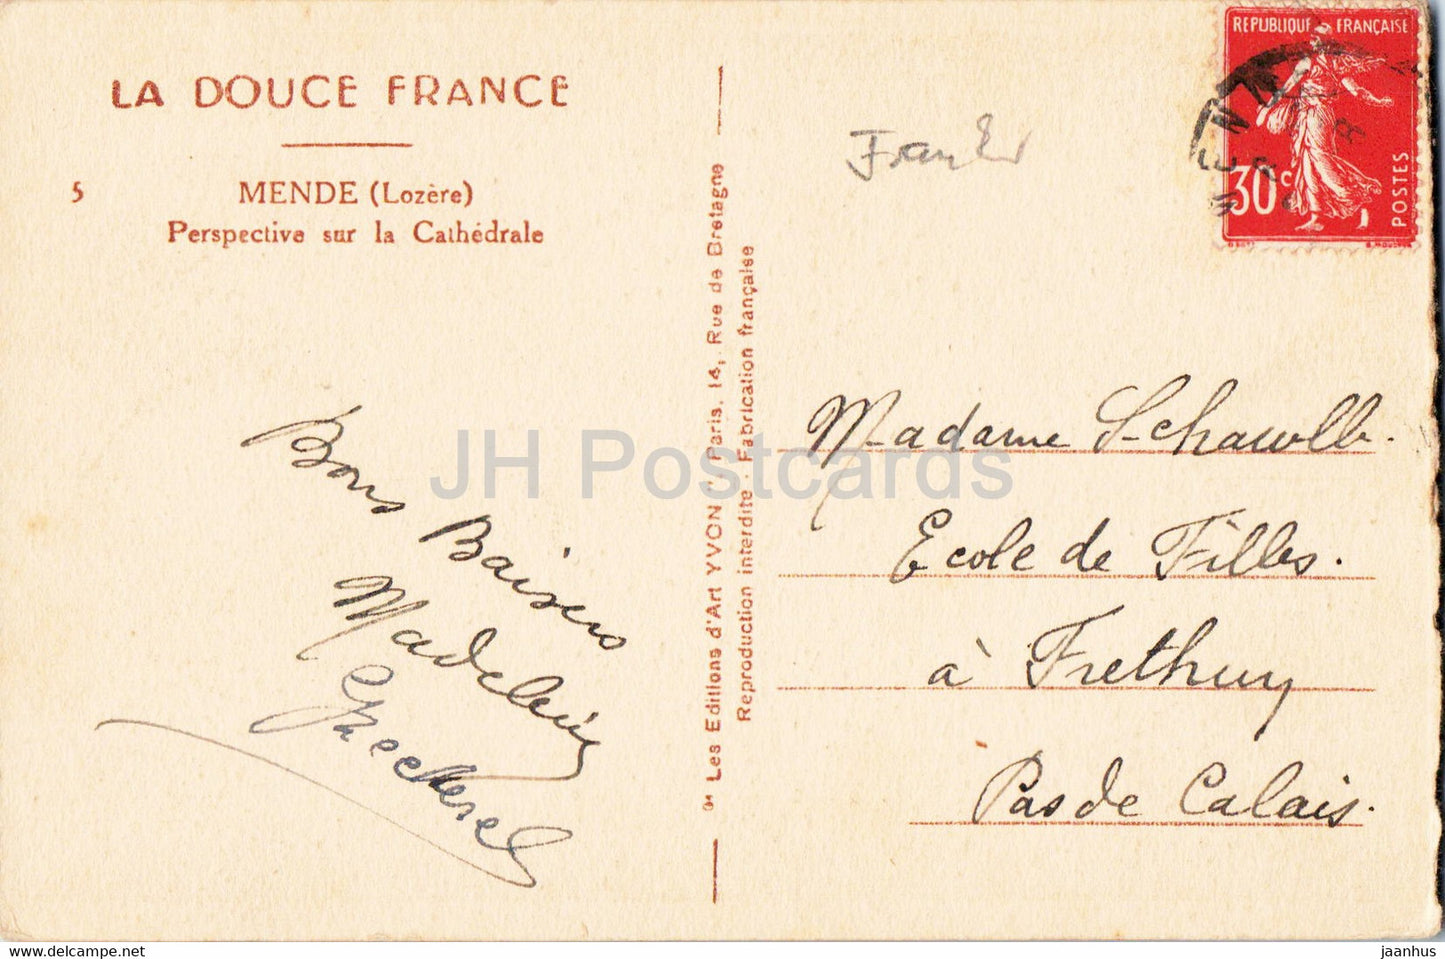 Mende - Perspective sur la Cathedrale - La Douce France - 5 - alte Postkarte - Frankreich - gebraucht